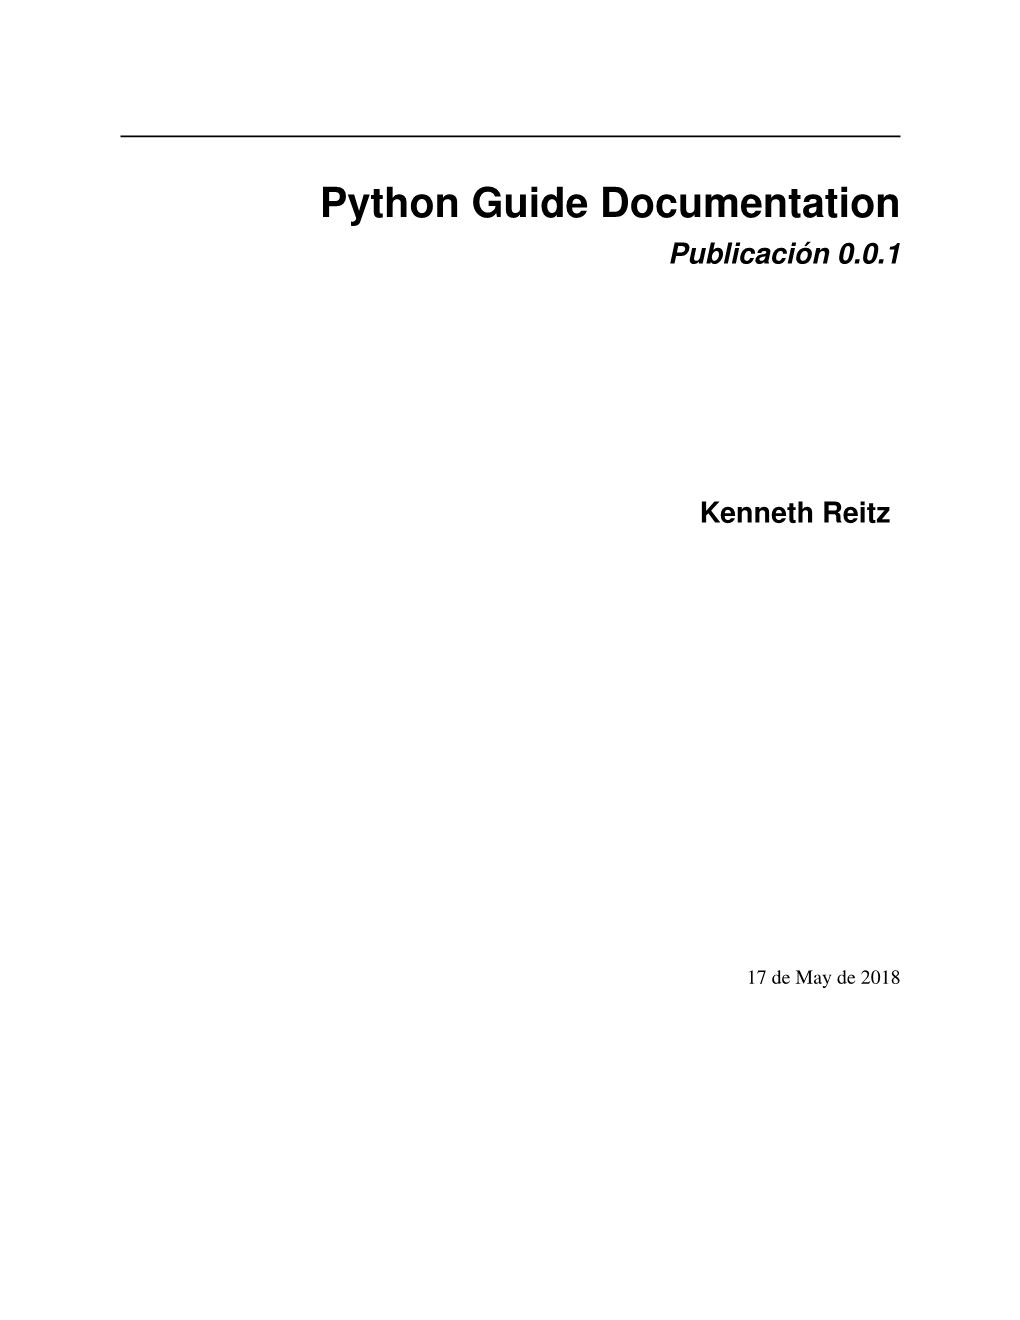 Python Guide Documentation Publicación 0.0.1